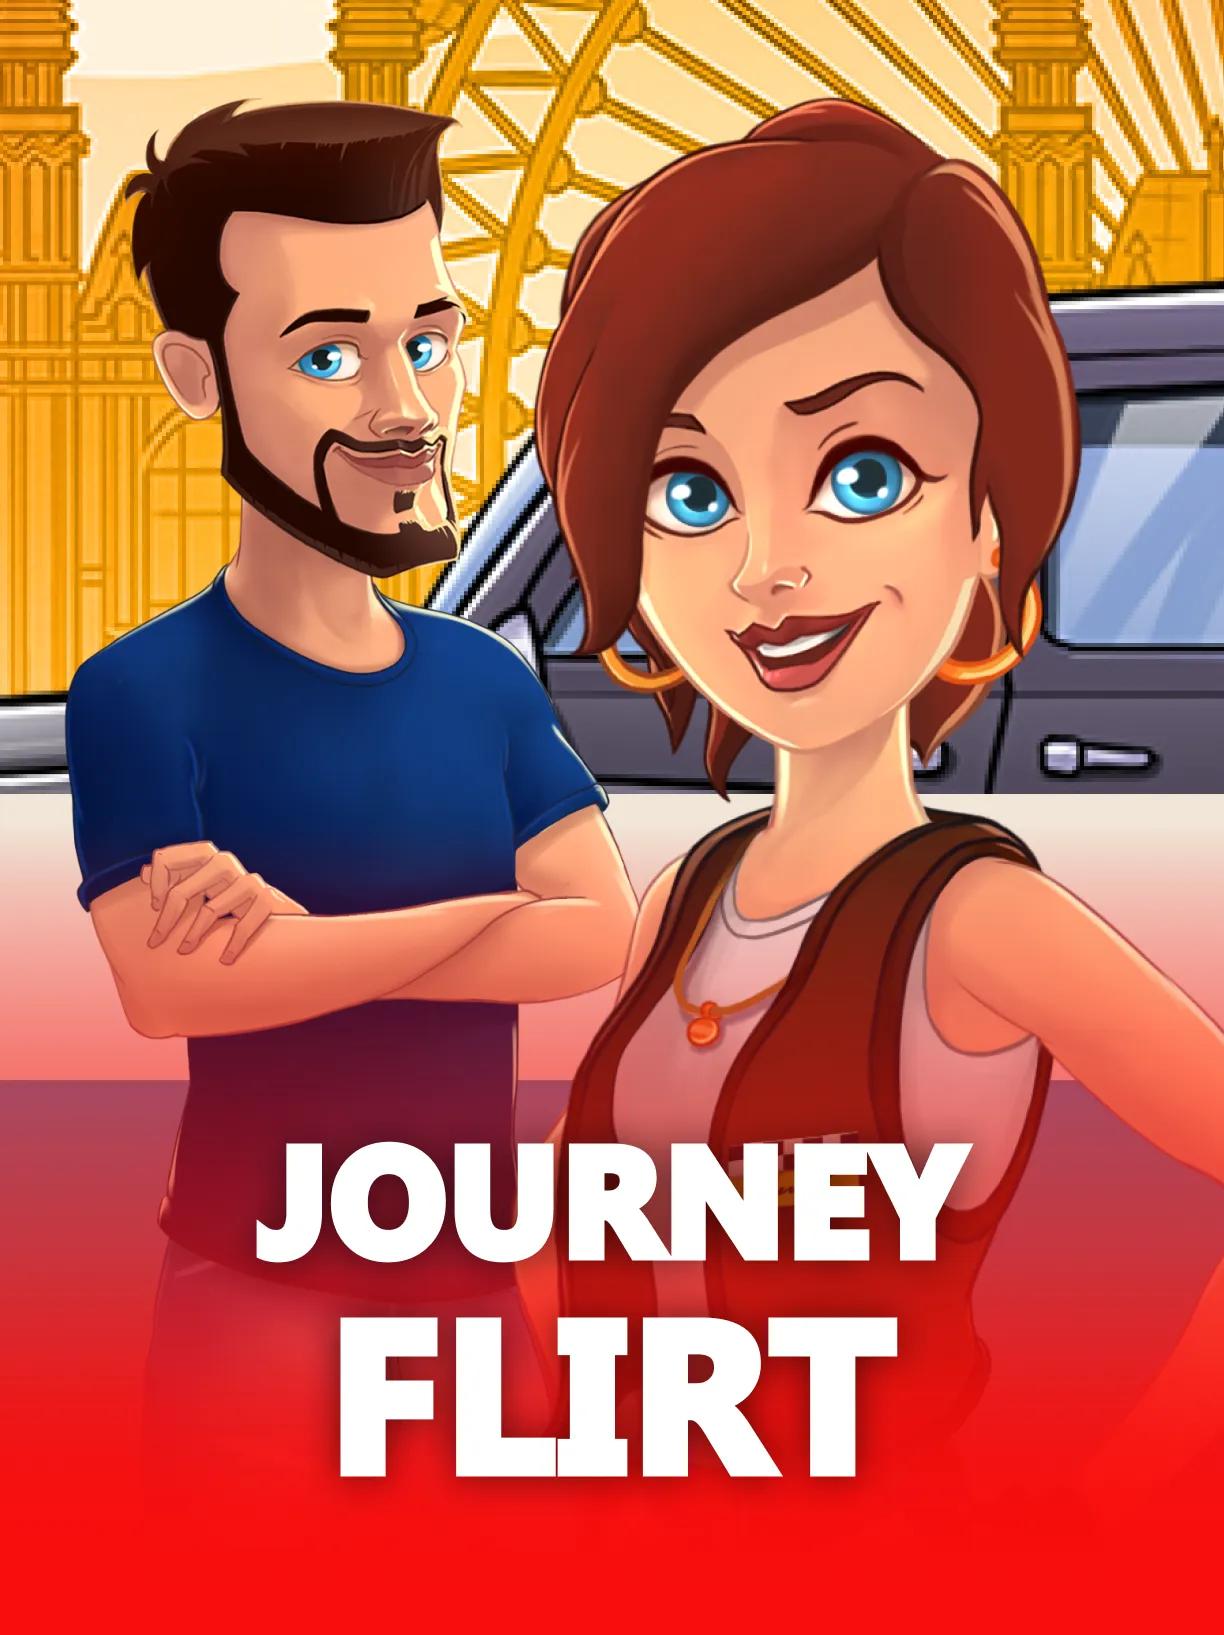 Journey Flirt